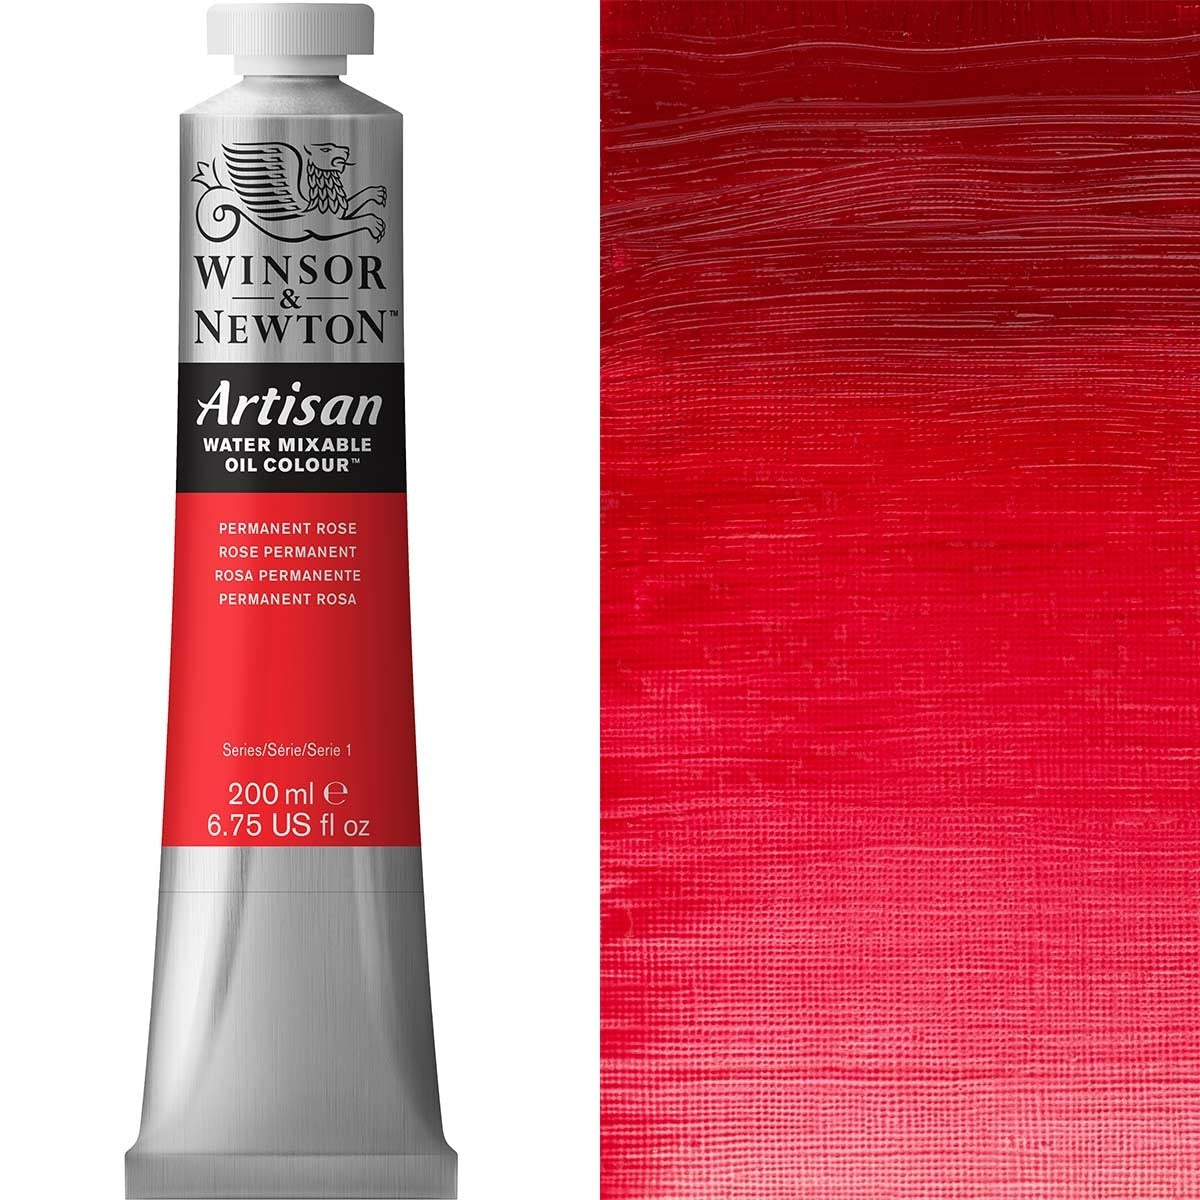 Winsor en Newton - Artisan Oil Color Water Mixable - 200 ml - Permanente Rose